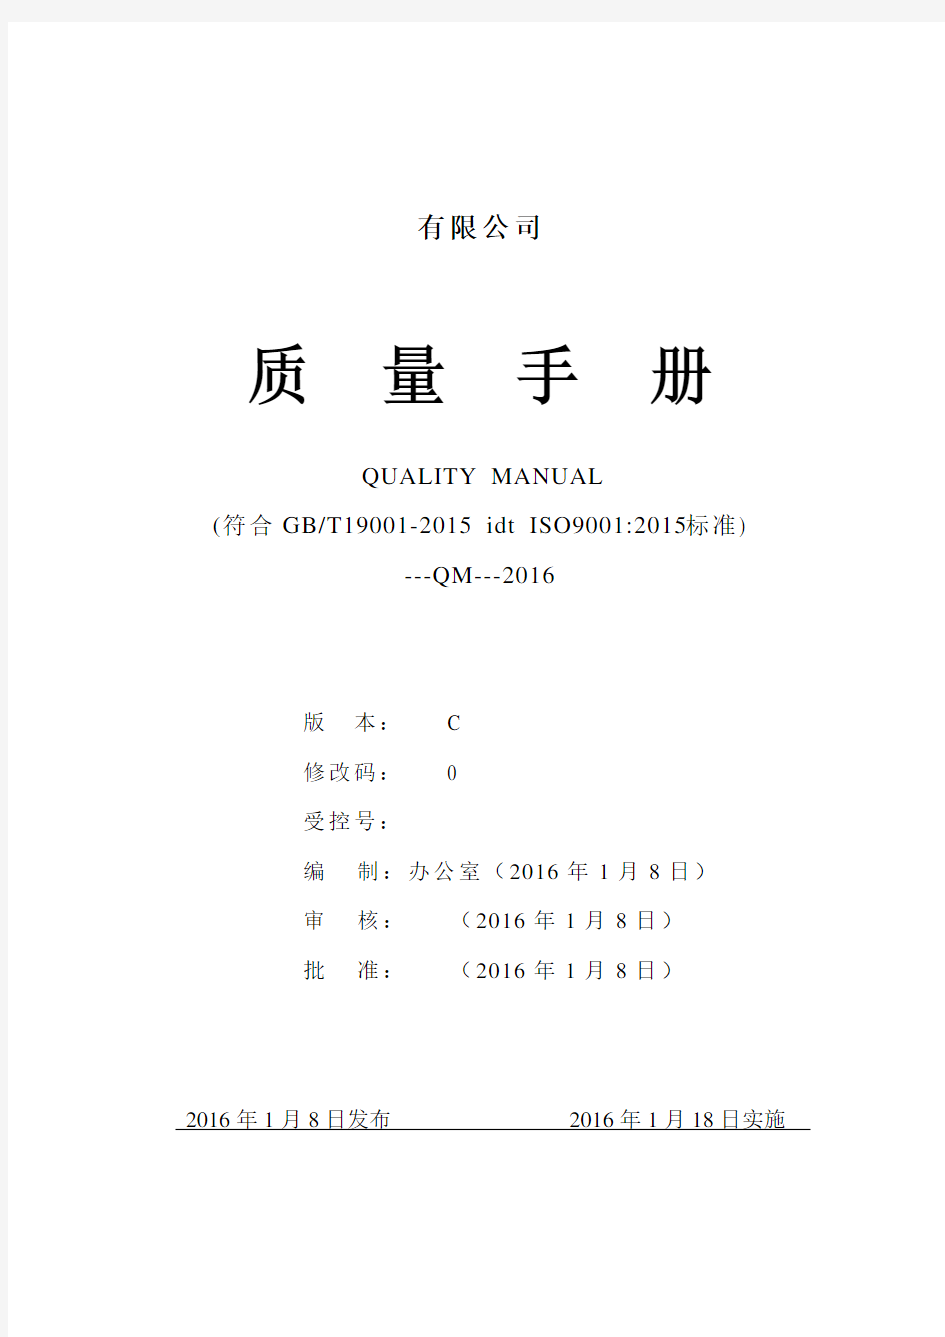 2015新版_质量手册(ISO9001-2015)